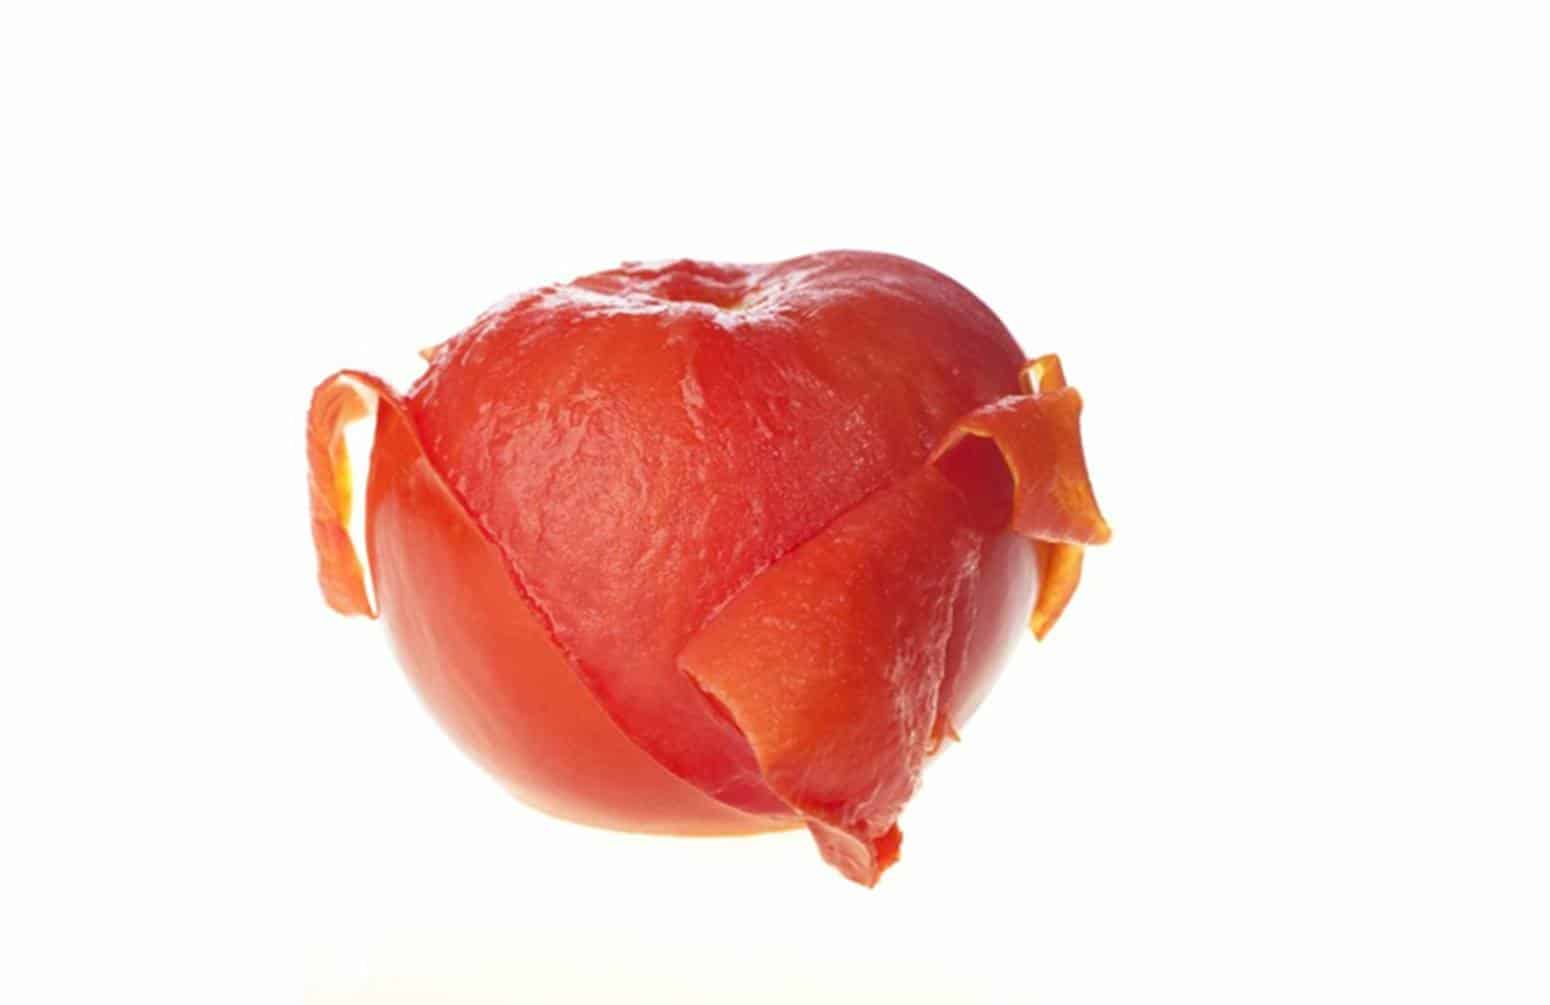 3 truques que você certamente não conhecia para descascar tomates